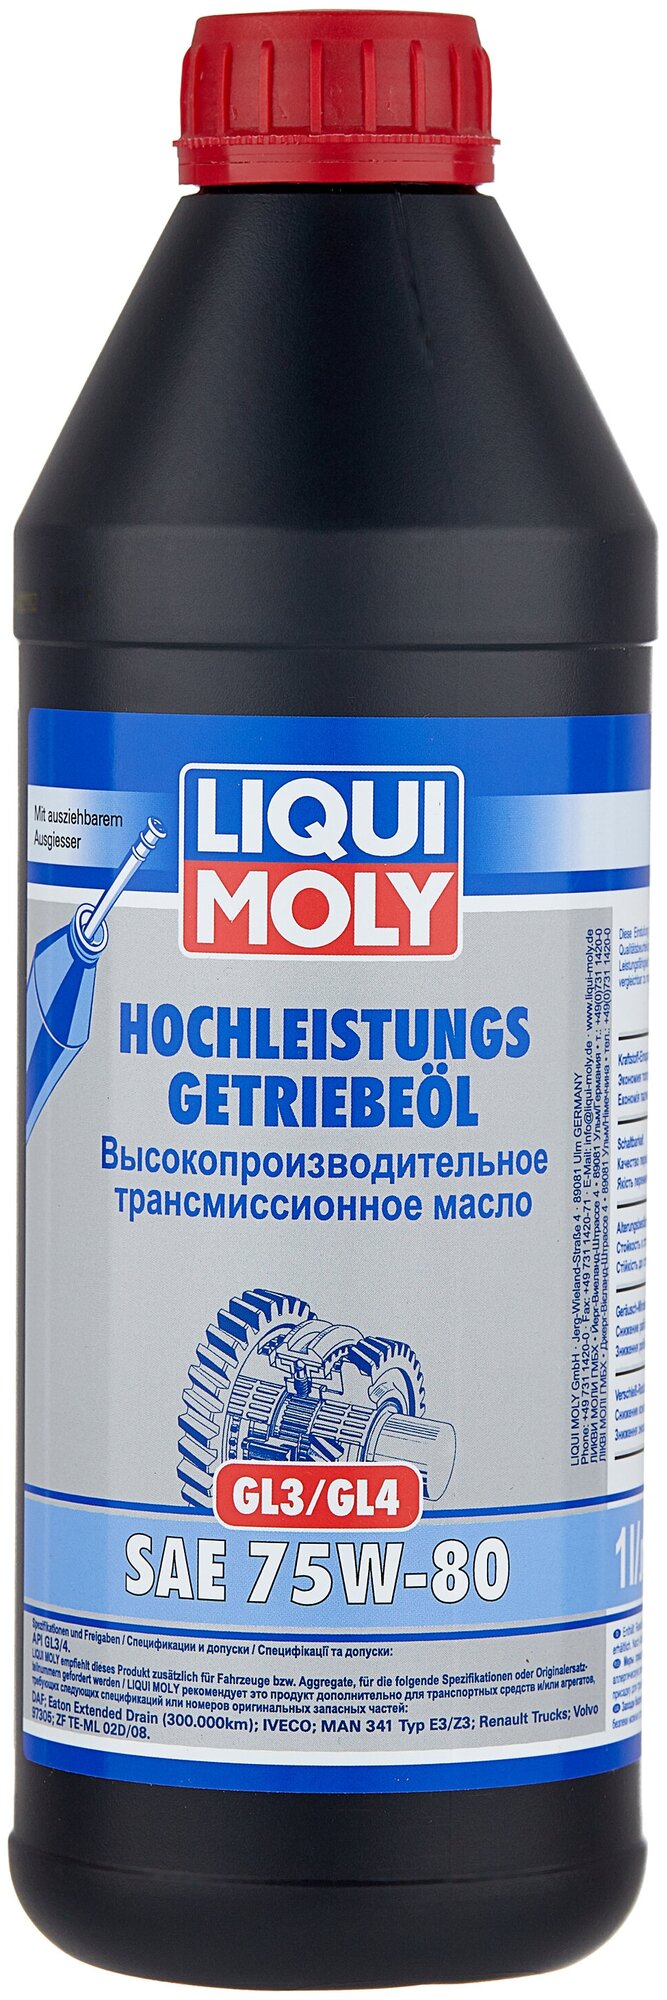 Трансмиссионное масло Liqui Moly - фото №1